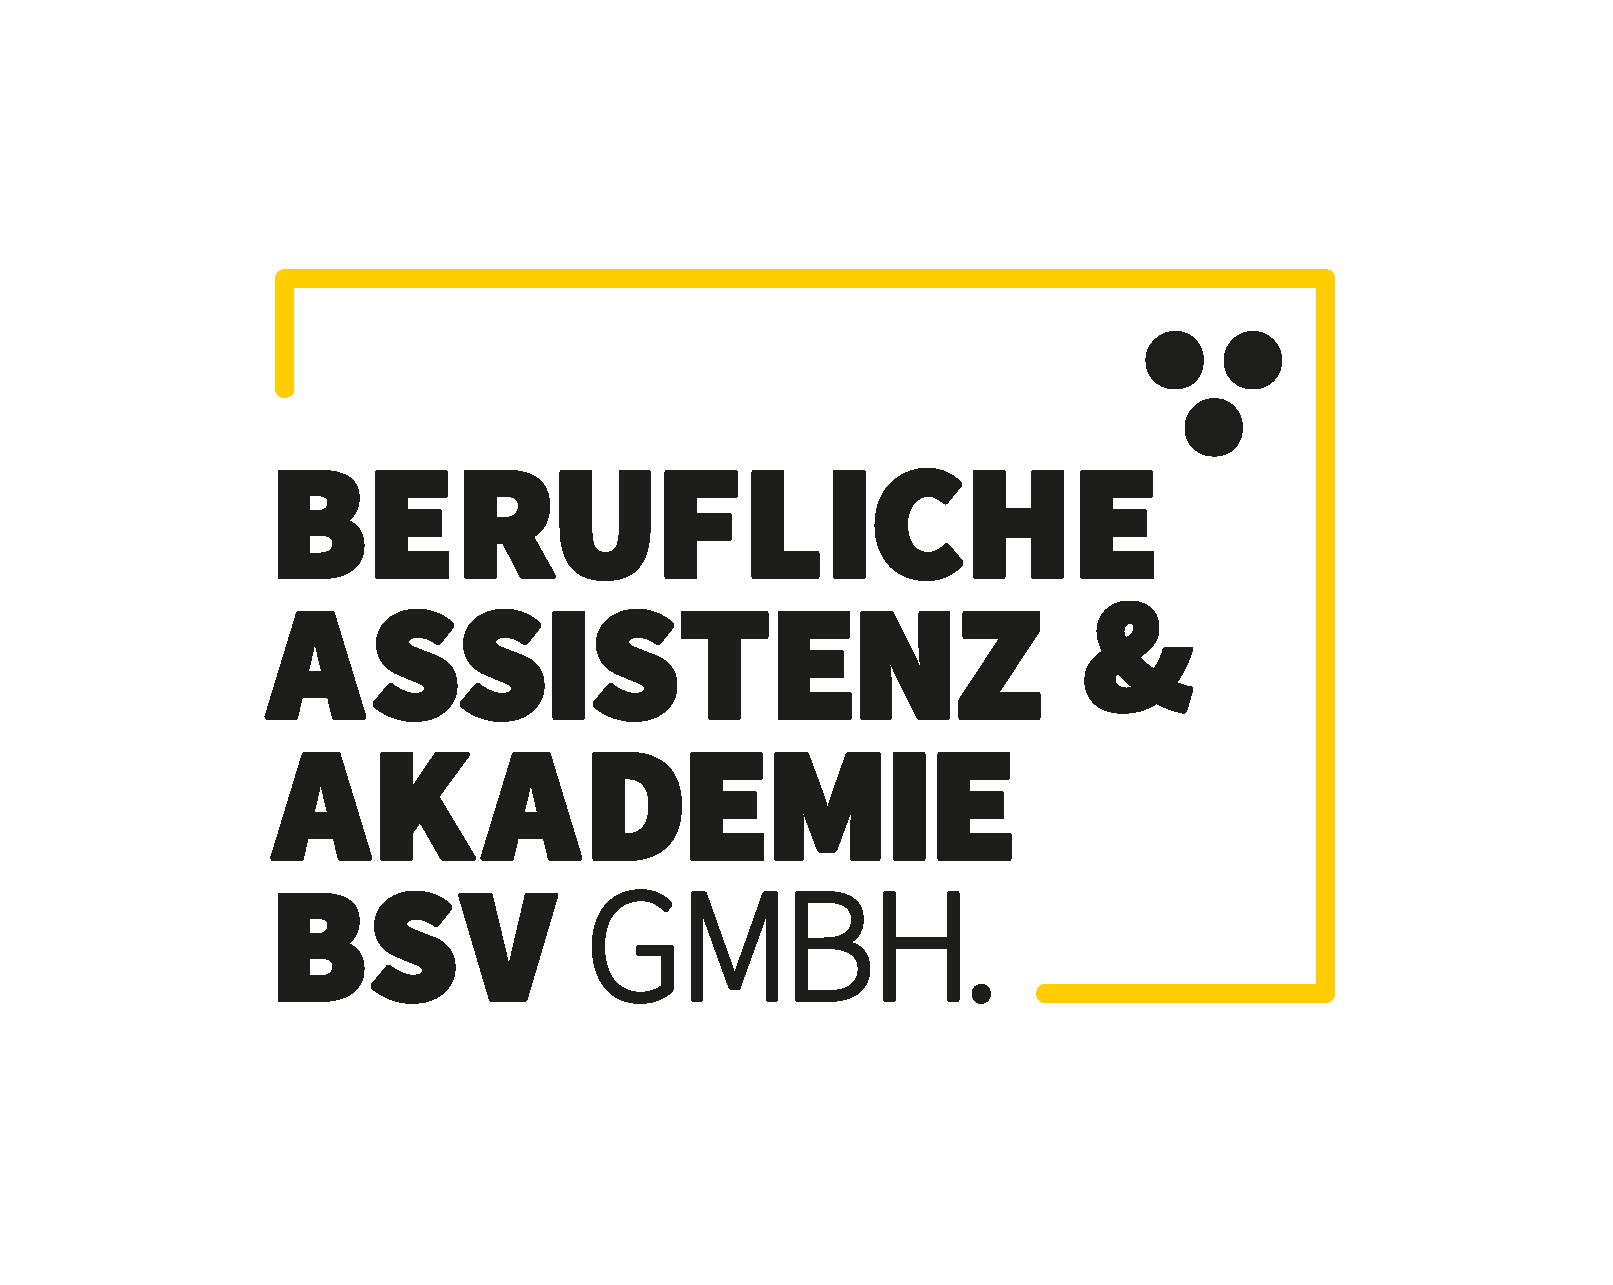 BAABSV GmbH